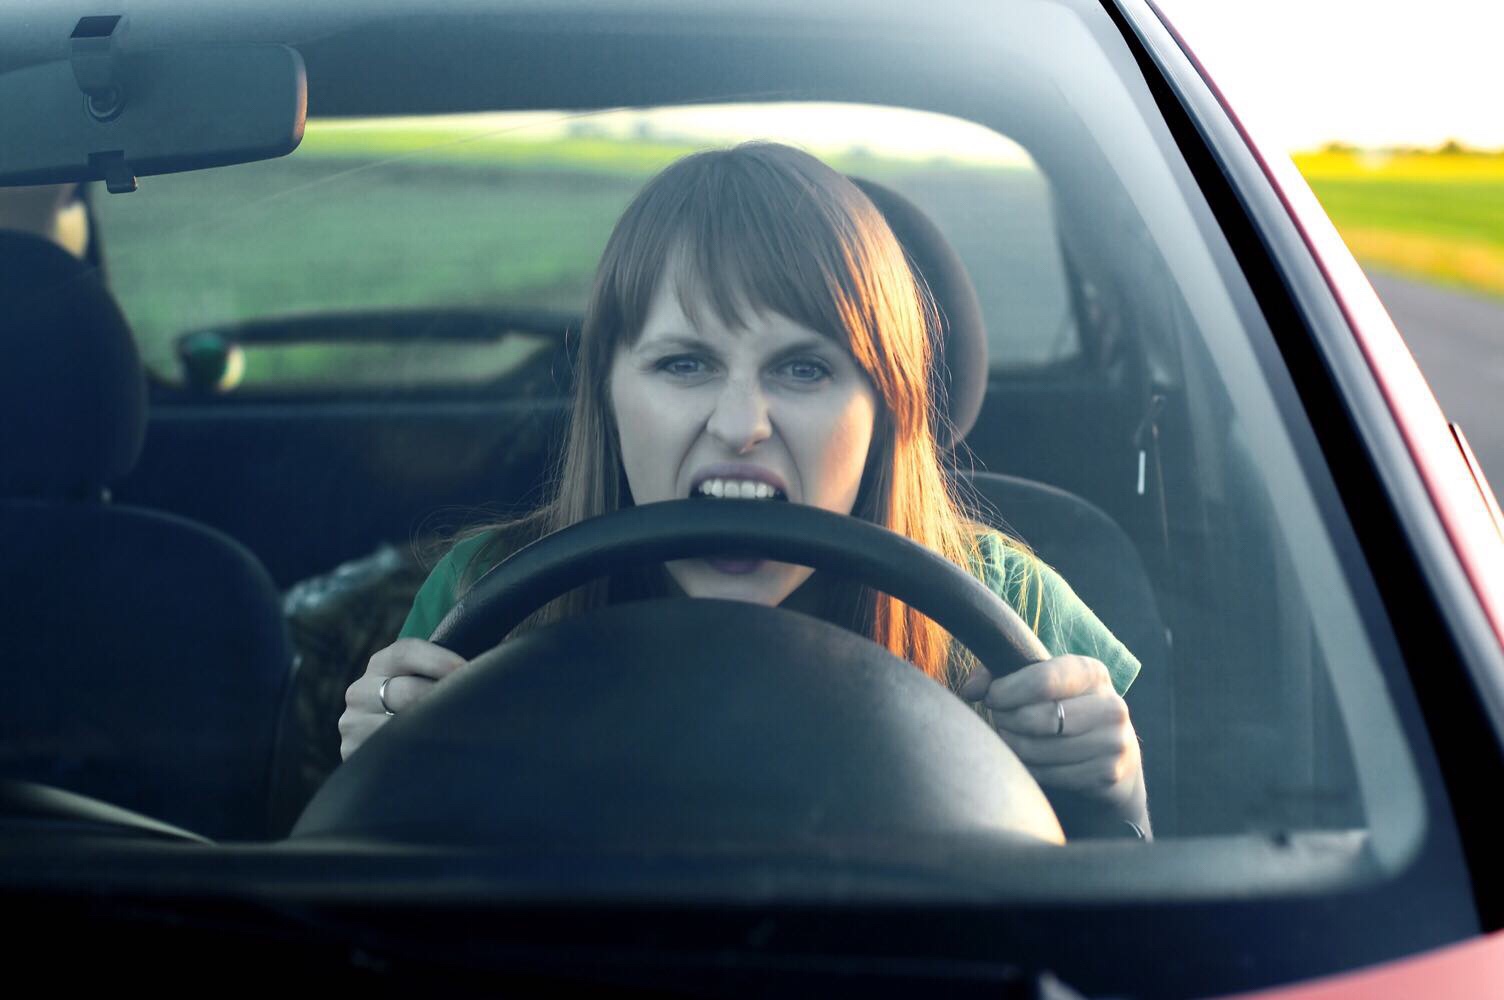 Road rage - fúria ao volante